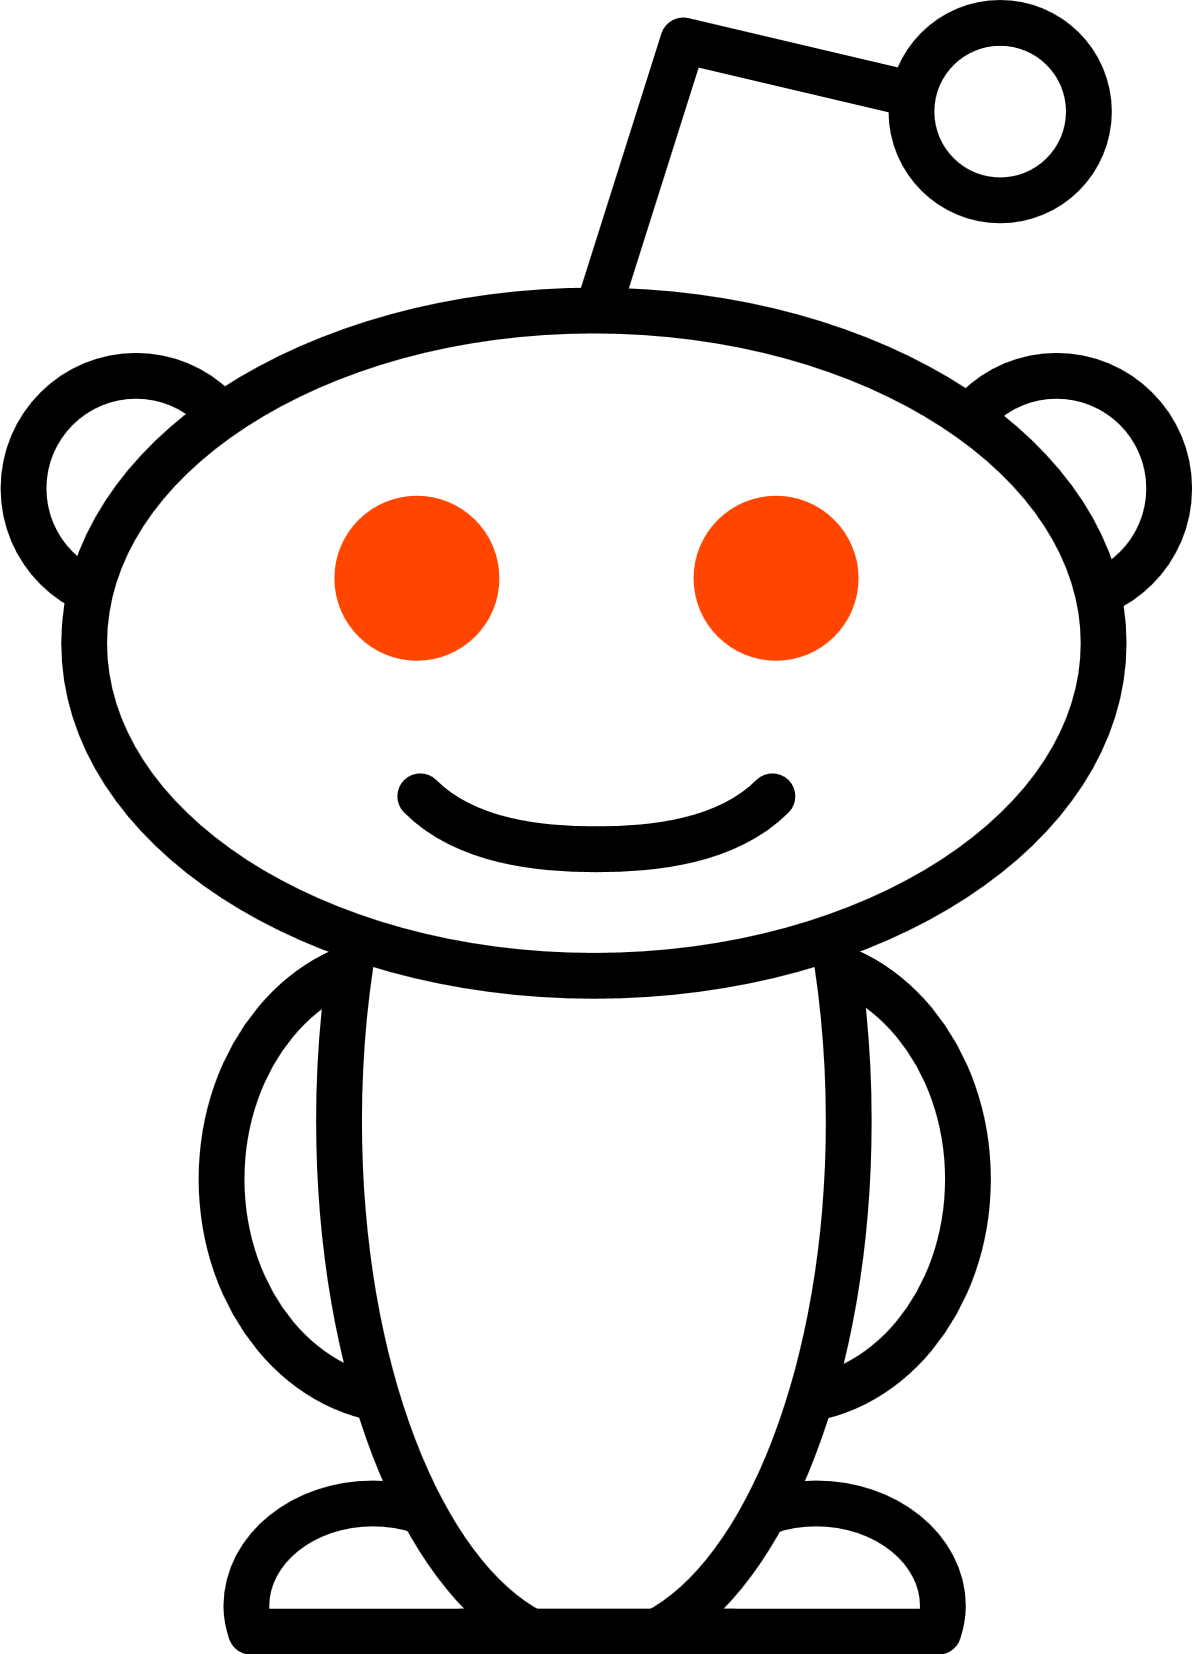 Reddit Logo - Reddit logo | AllAboutLean.com